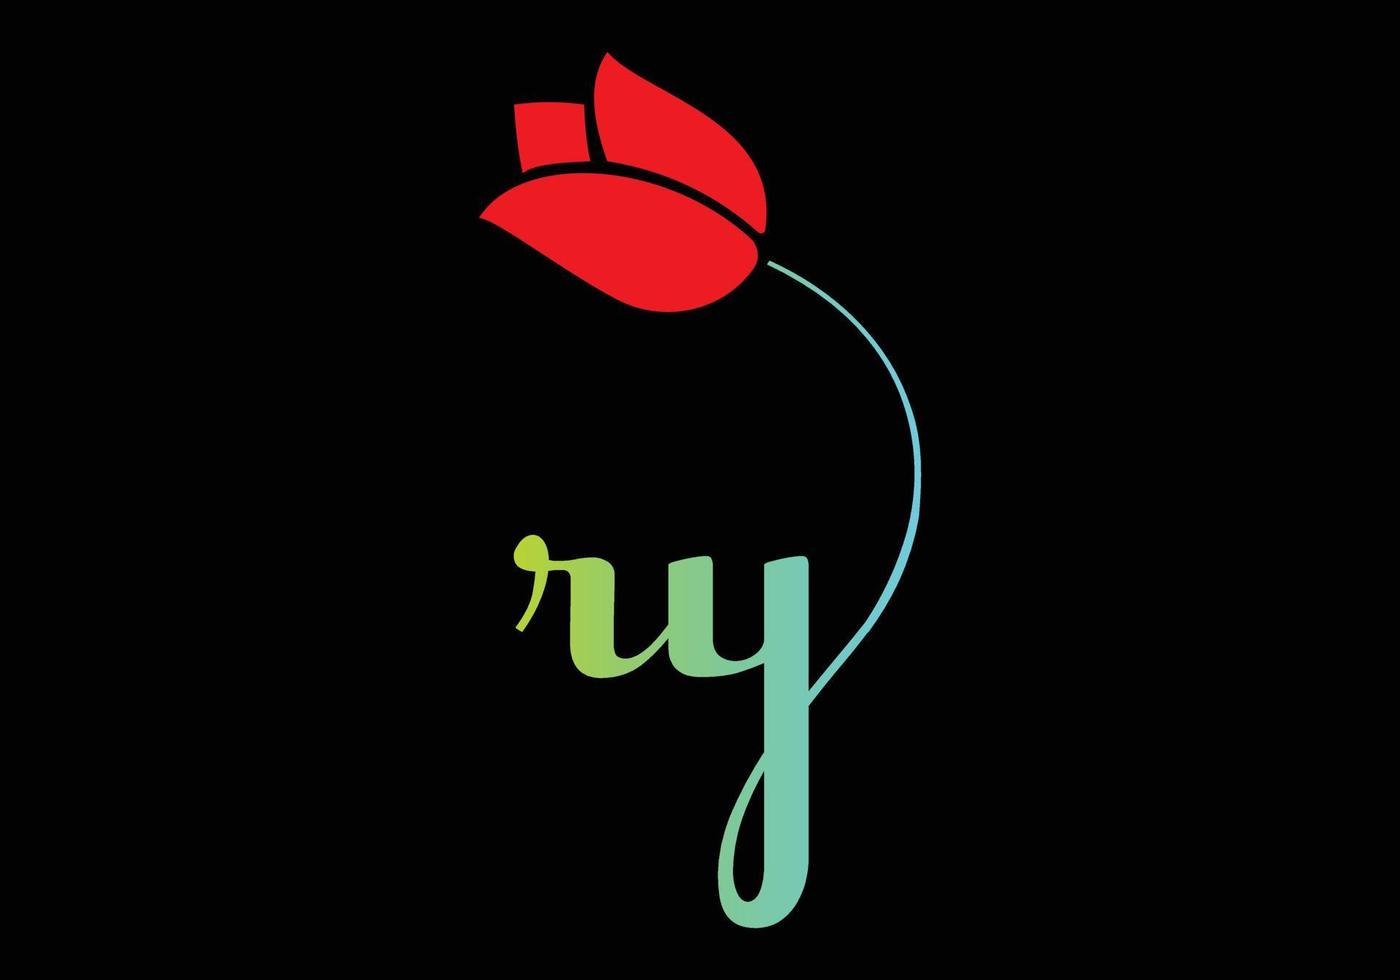 ry monograms rose logo, plantilla de vector de belleza de spa de cosméticos de lujo